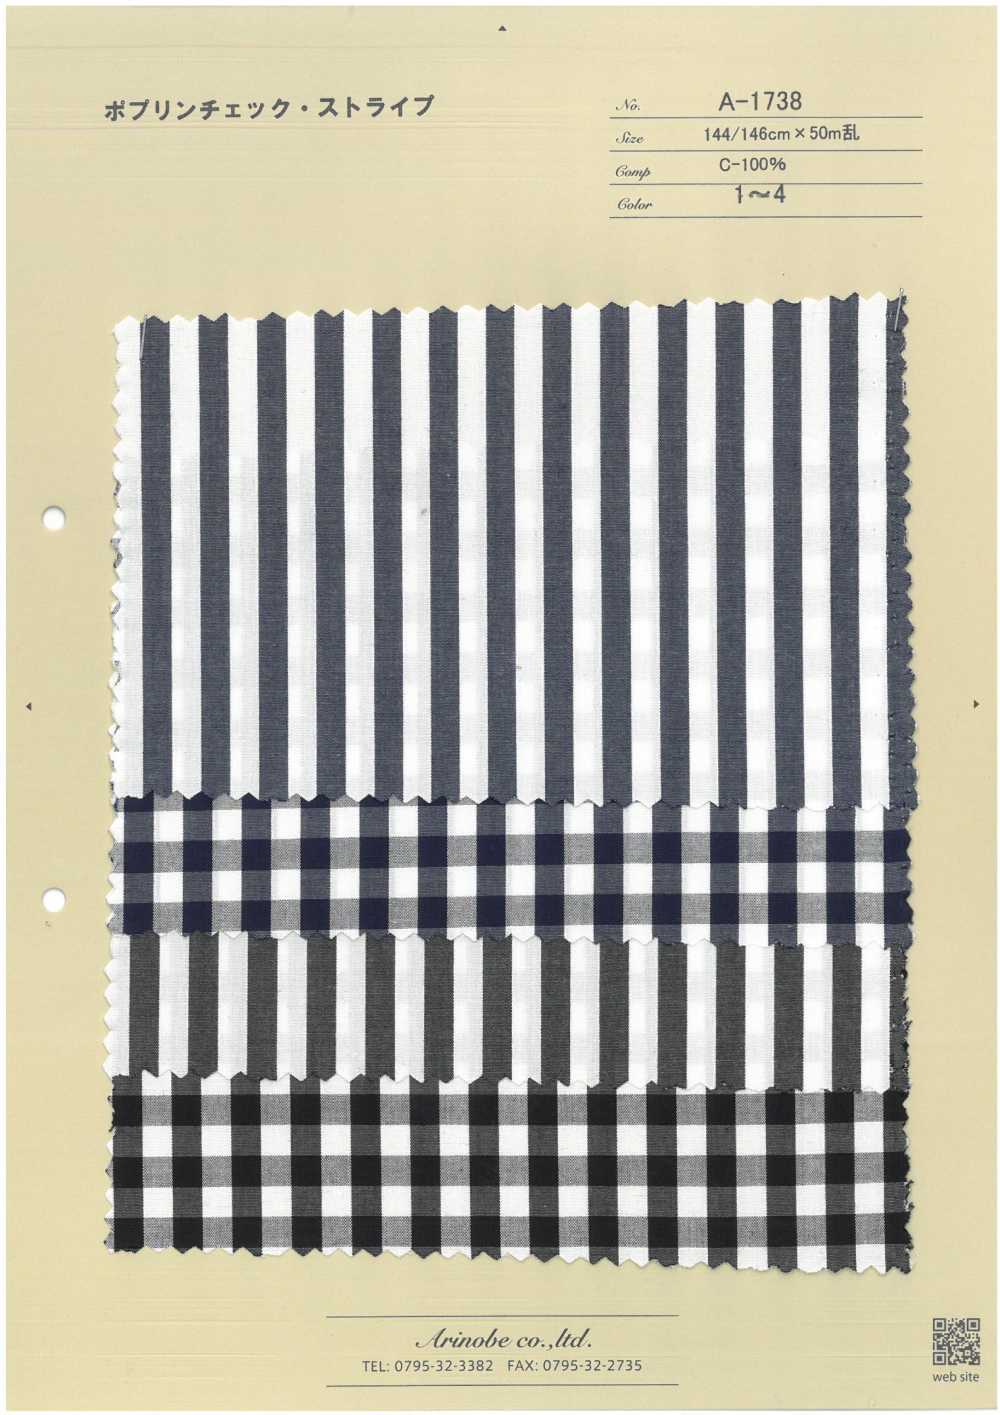 A-1738 Poplin Check Stripe[Textile / Fabric] ARINOBE CO., LTD.